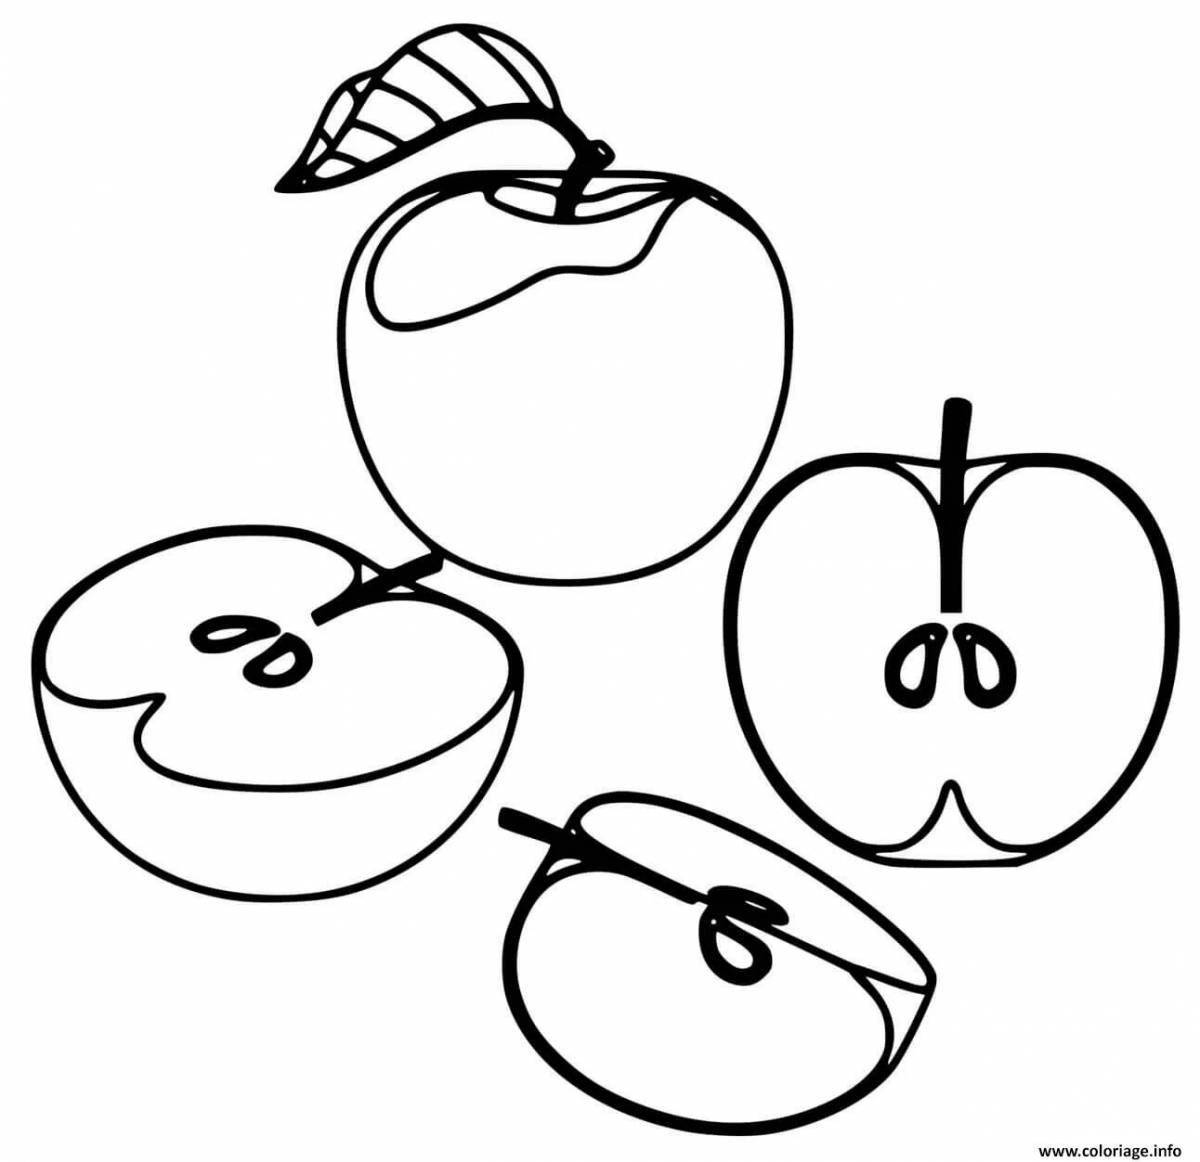 Веселый рисунок яблока для детей